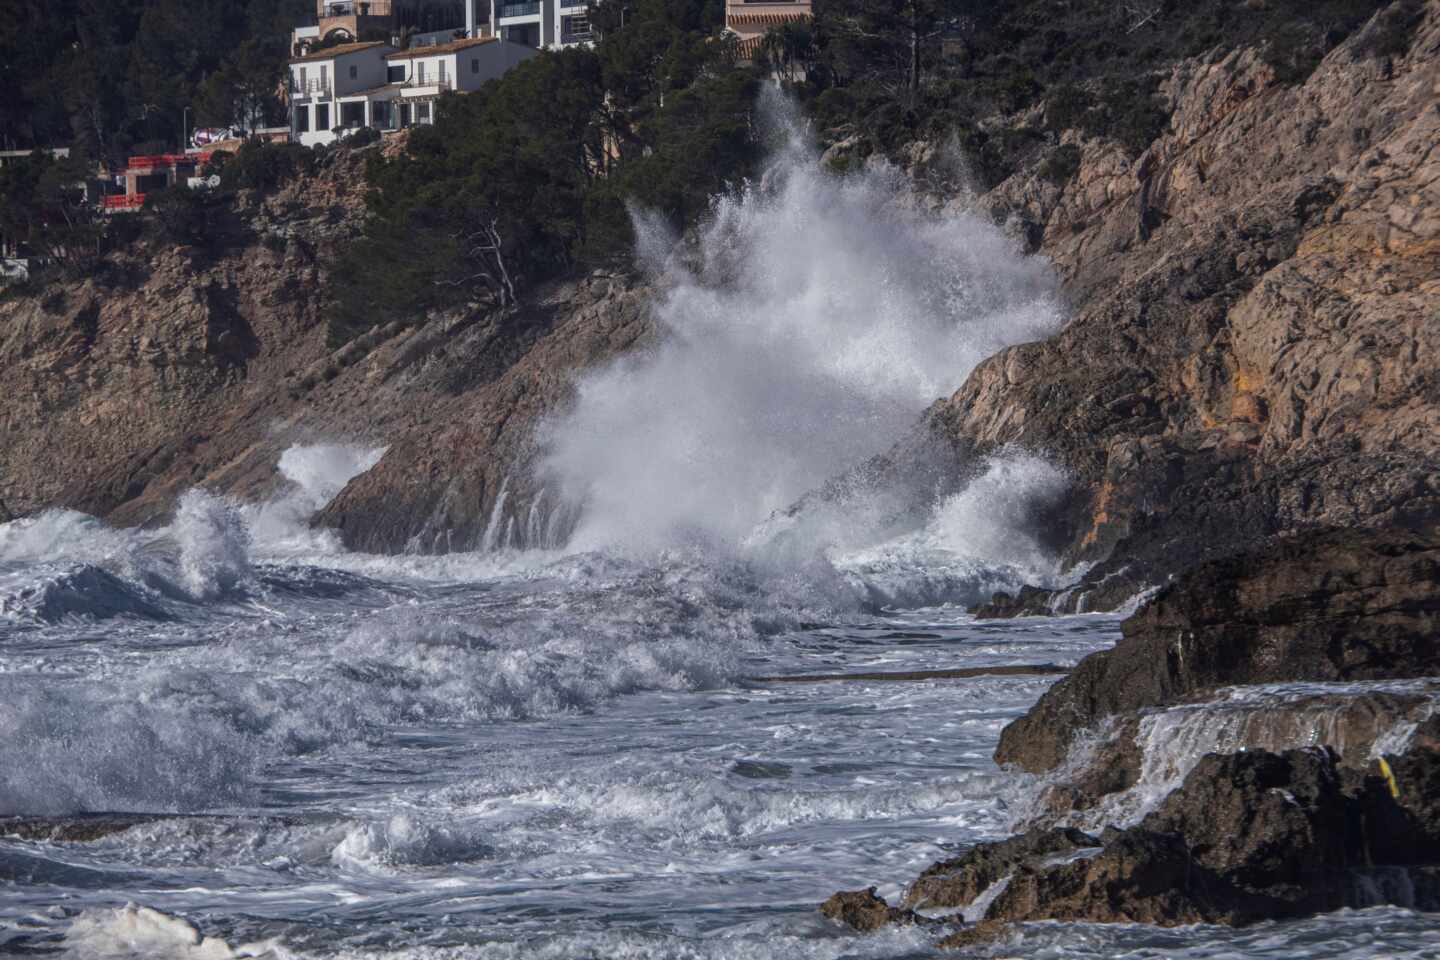 Hortensia amaina tras dejar viento huracanado de 180 km/h y olas de 7 metros